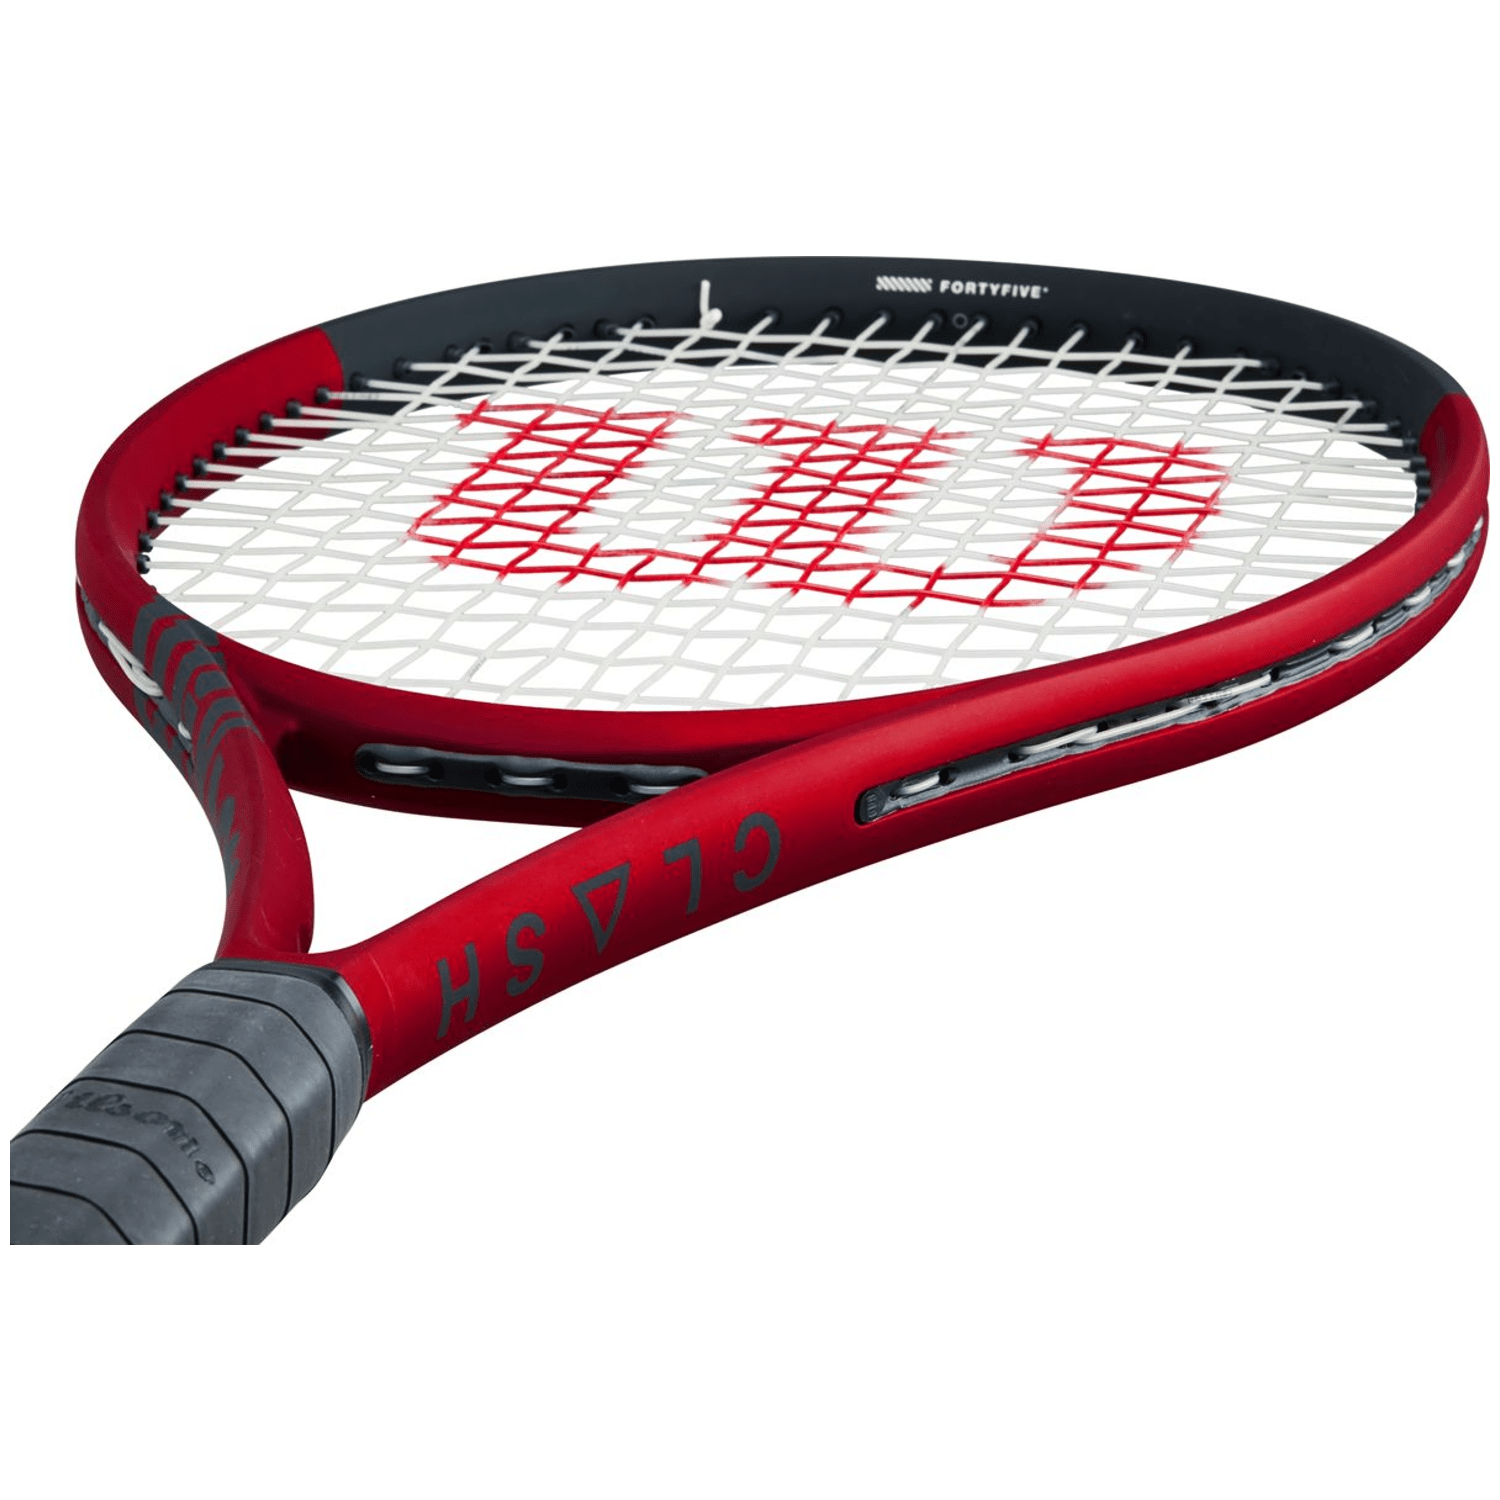 Wilson Clash 100L V2.0 FRM Tennisschläger